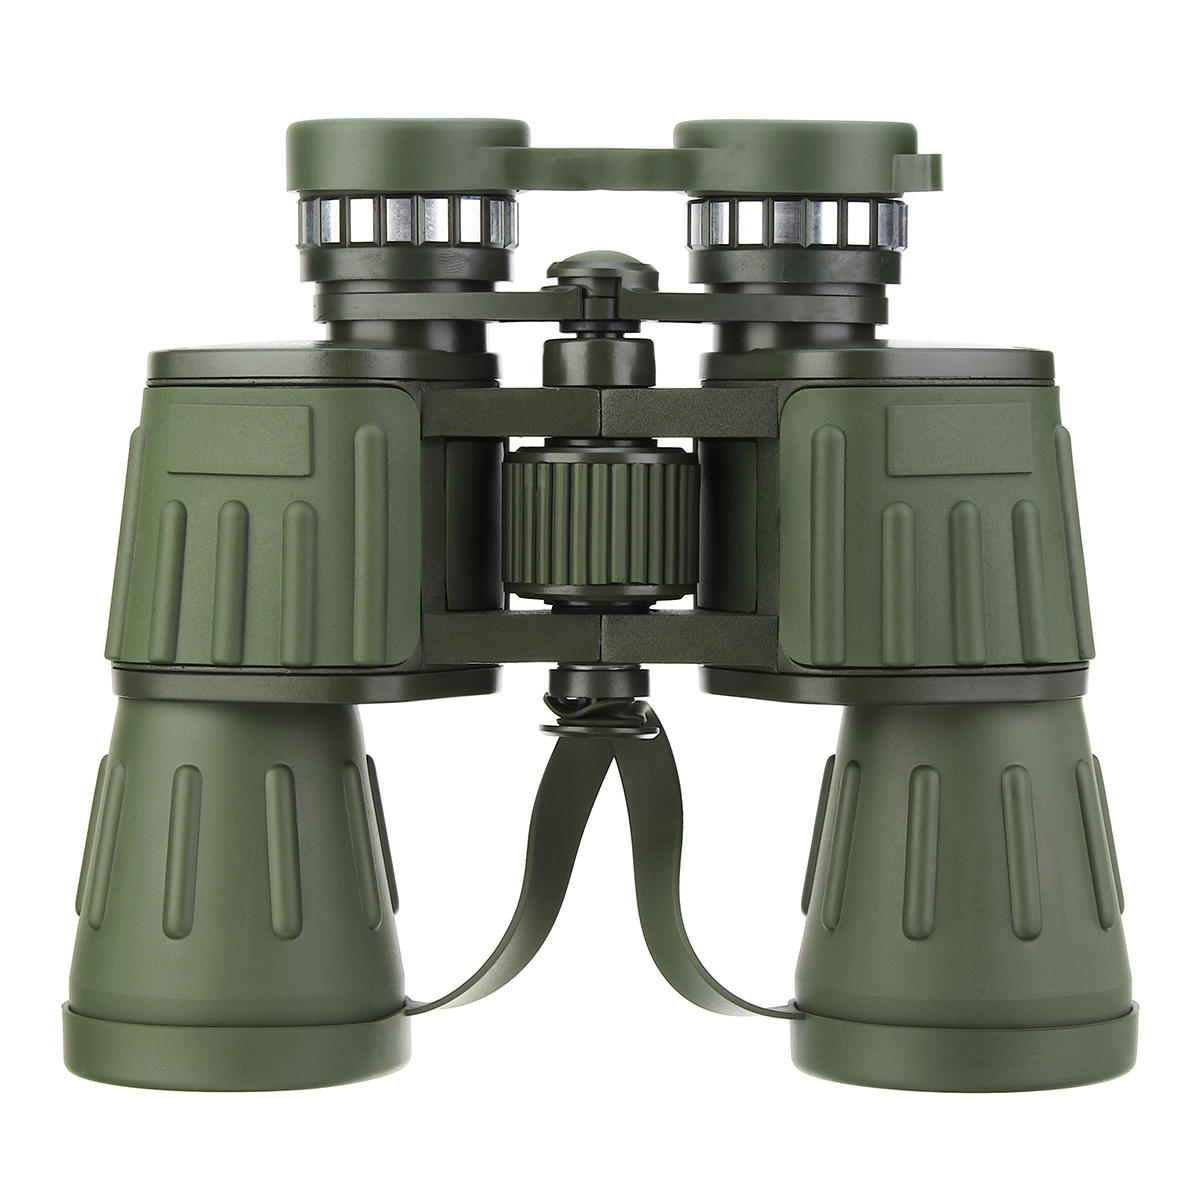 IPRee 60x50 BNV-M1 Militaire Leger Verrekijker HD Optiek Camping Jacht Telescoop Dag / Nachtzicht